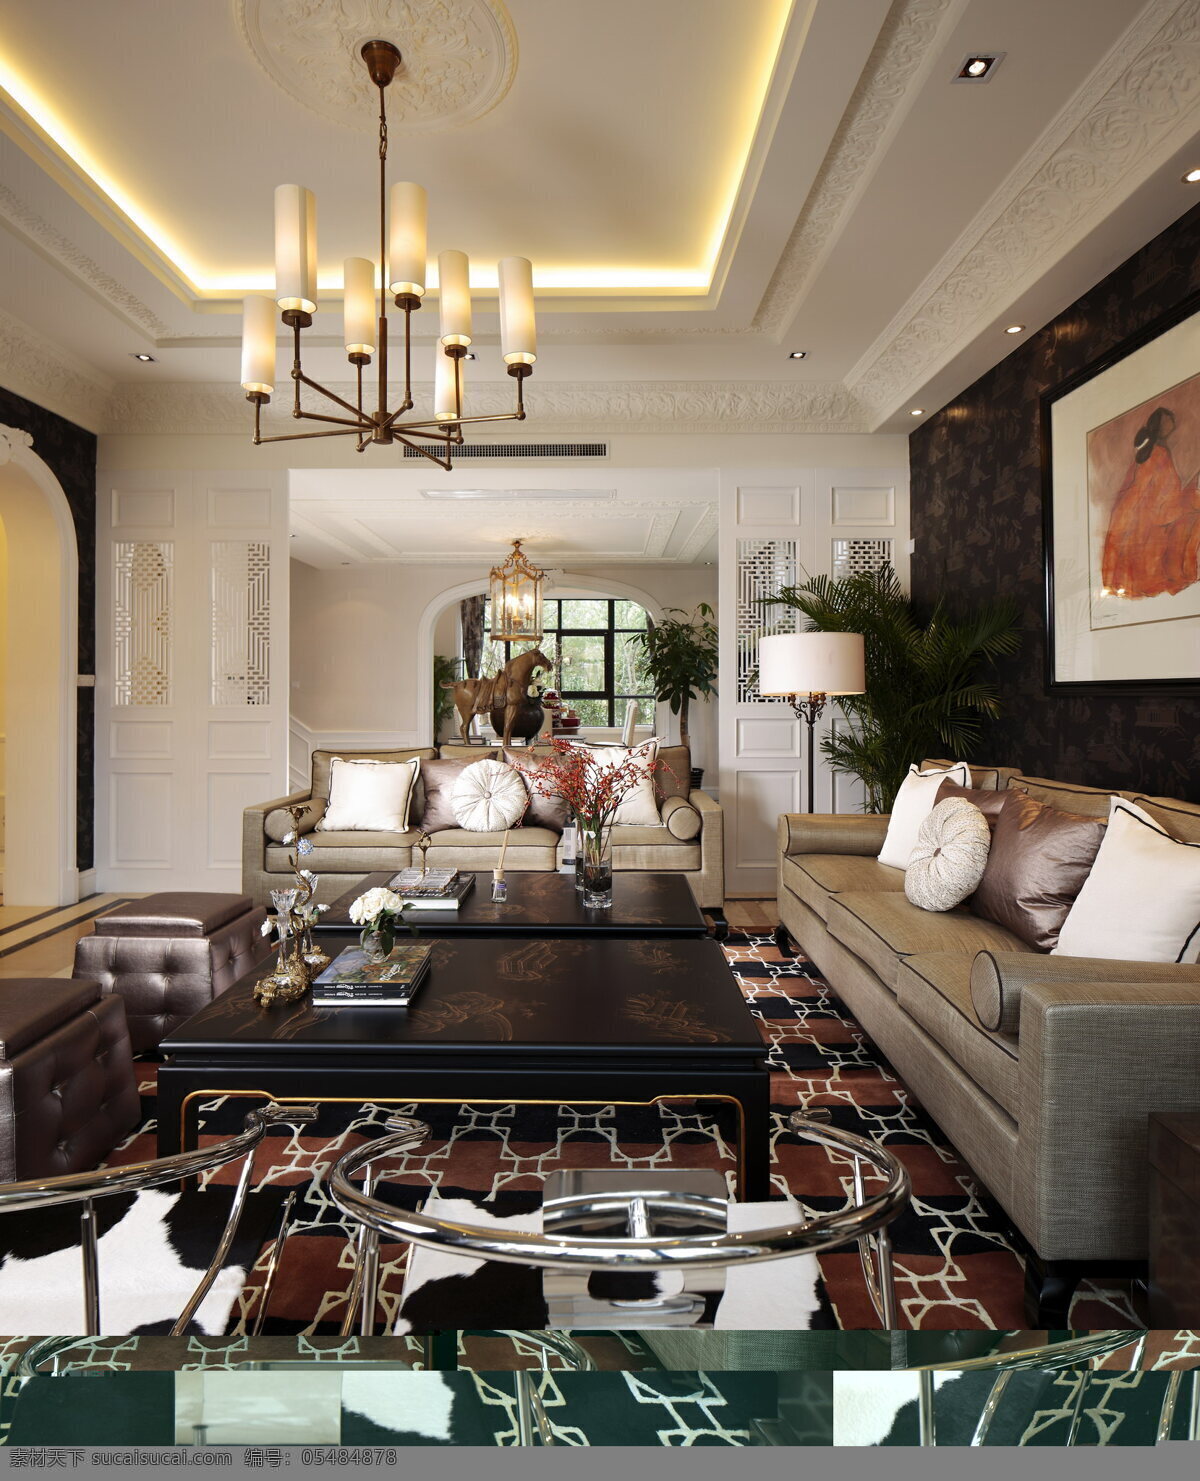 豪华 客厅 室内设计 家装 效果图 家装效果图 雨花石 地板设计 沙发 挂灯 抱枕 绿树